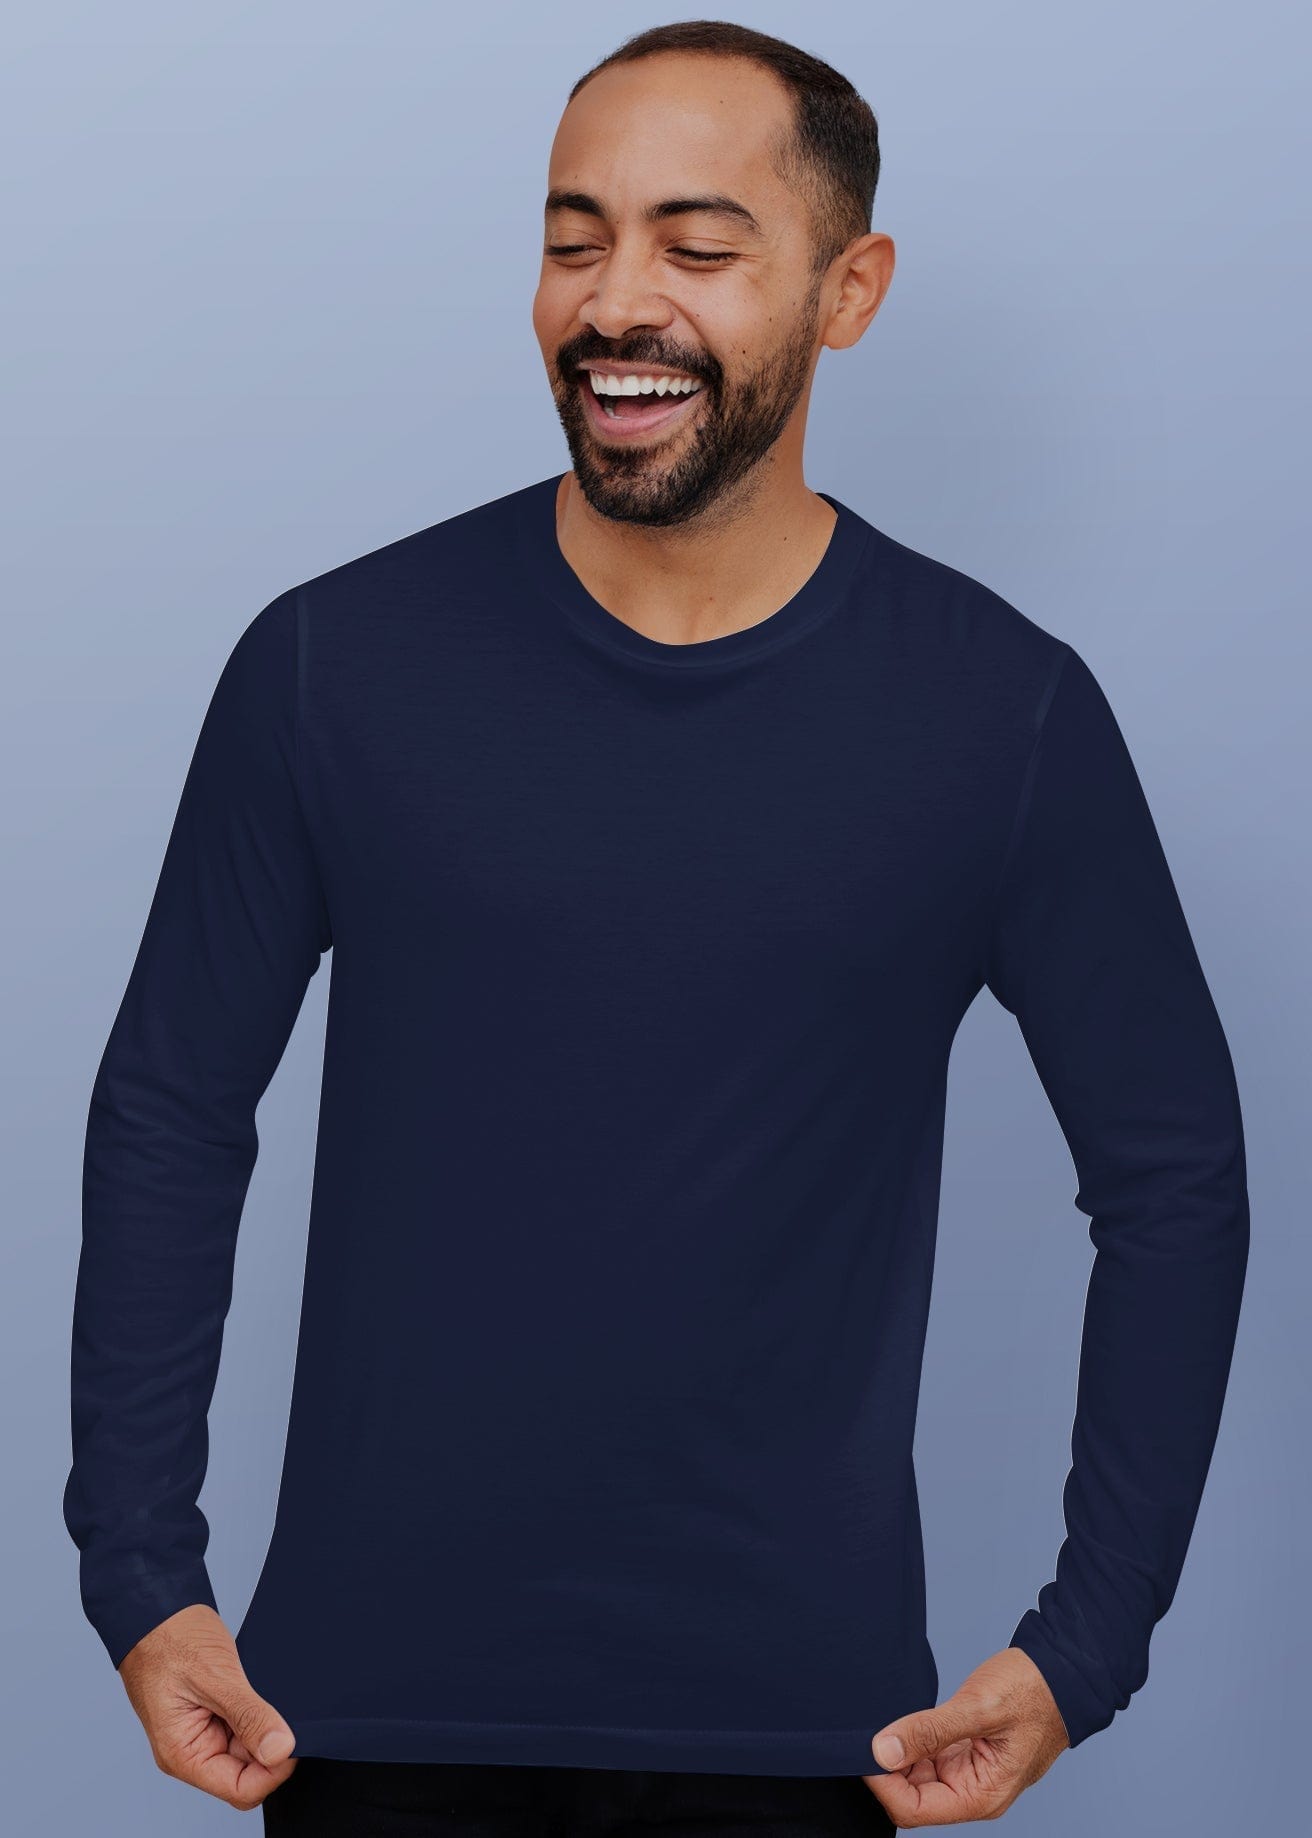 Pick Any 4 - Plain Full Sleeve T-Shirts Combo